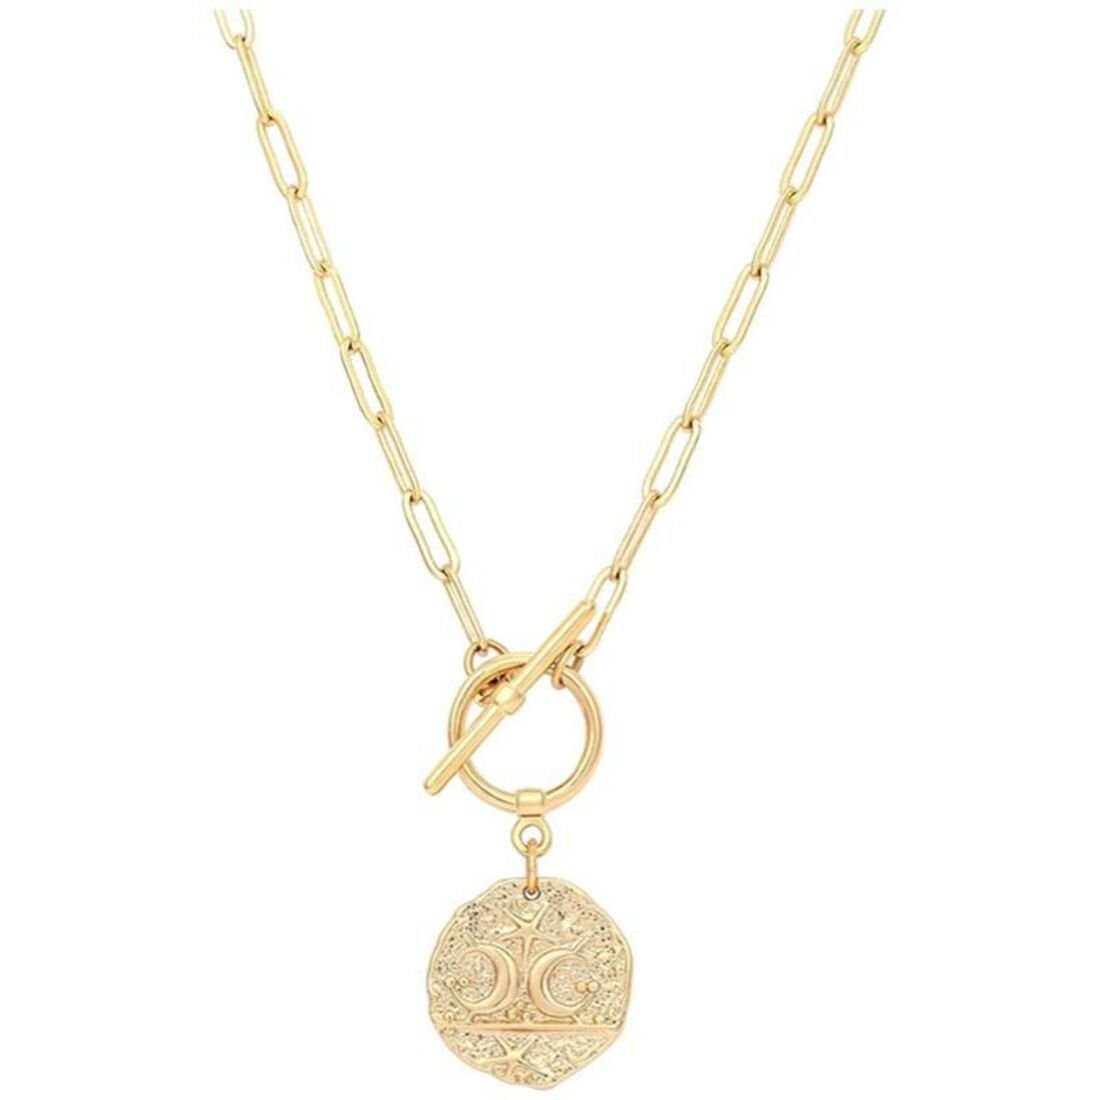 Mmgoqqt Kette mit Anhänger »Mond und Stern Medaillon Anhänger Halskette  Gold Oval Link«